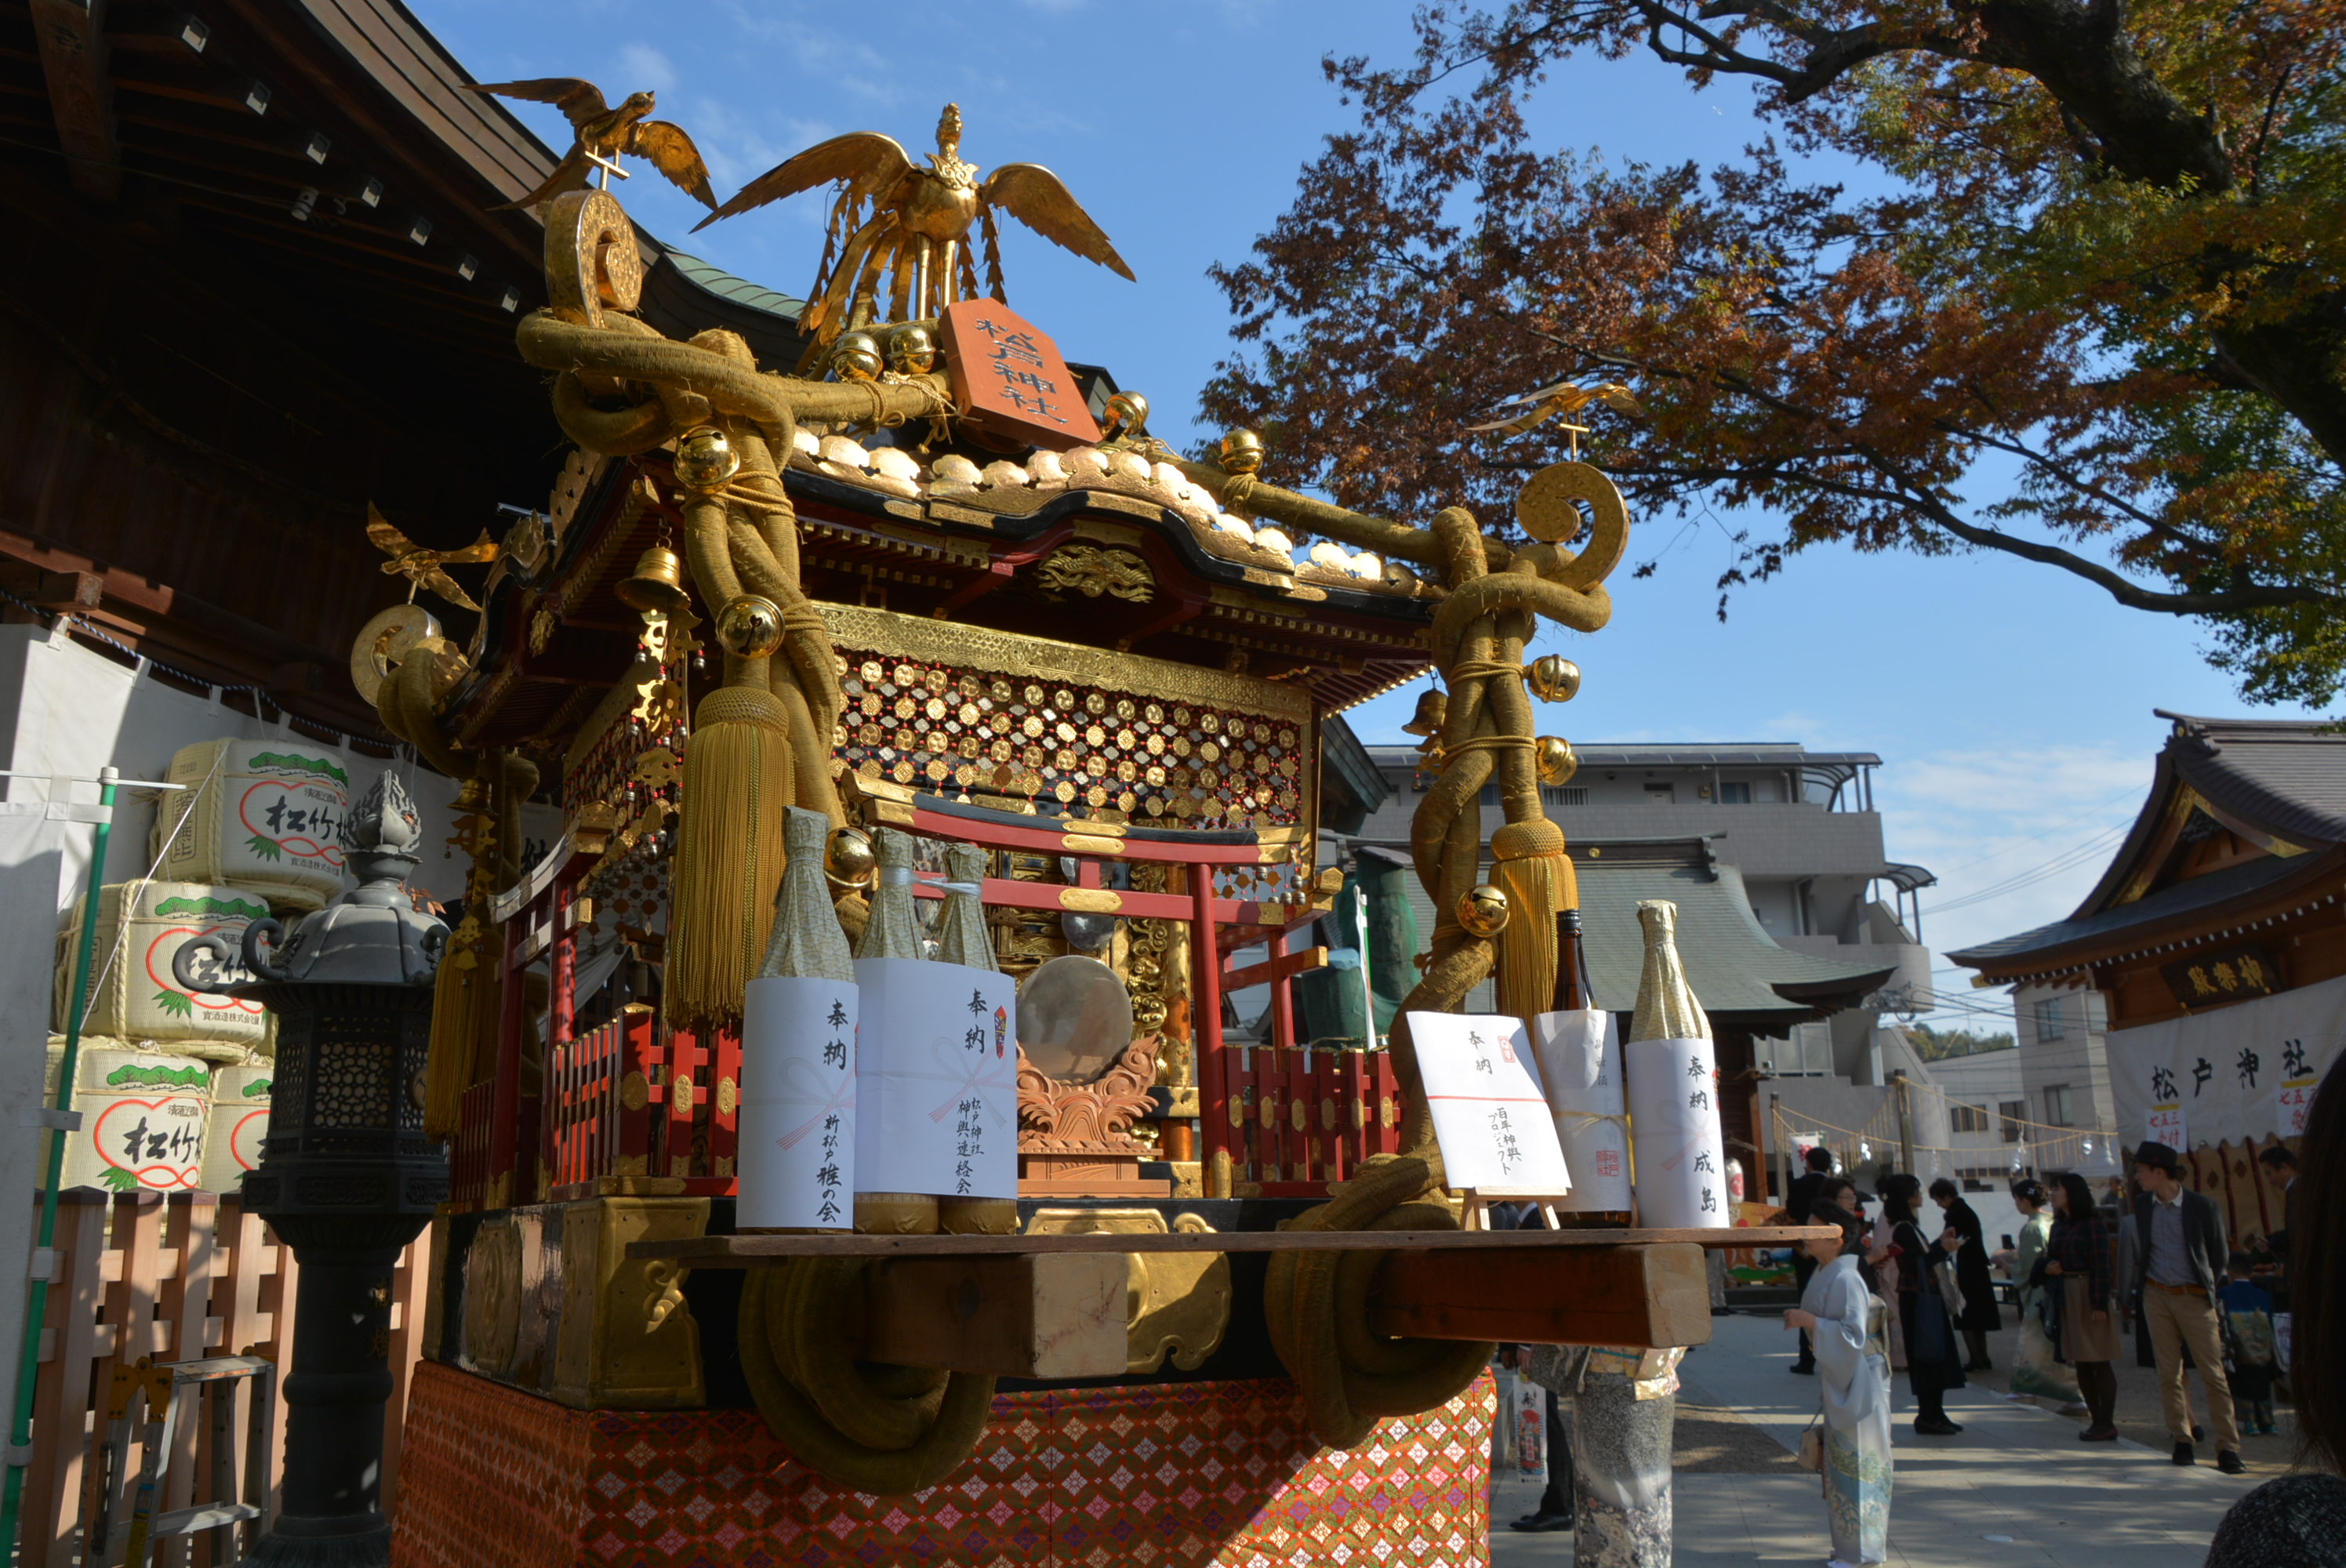 松戸神社の神輿を修復２０２０年の神幸祭に向け半世紀ぶり 松戸よみうり